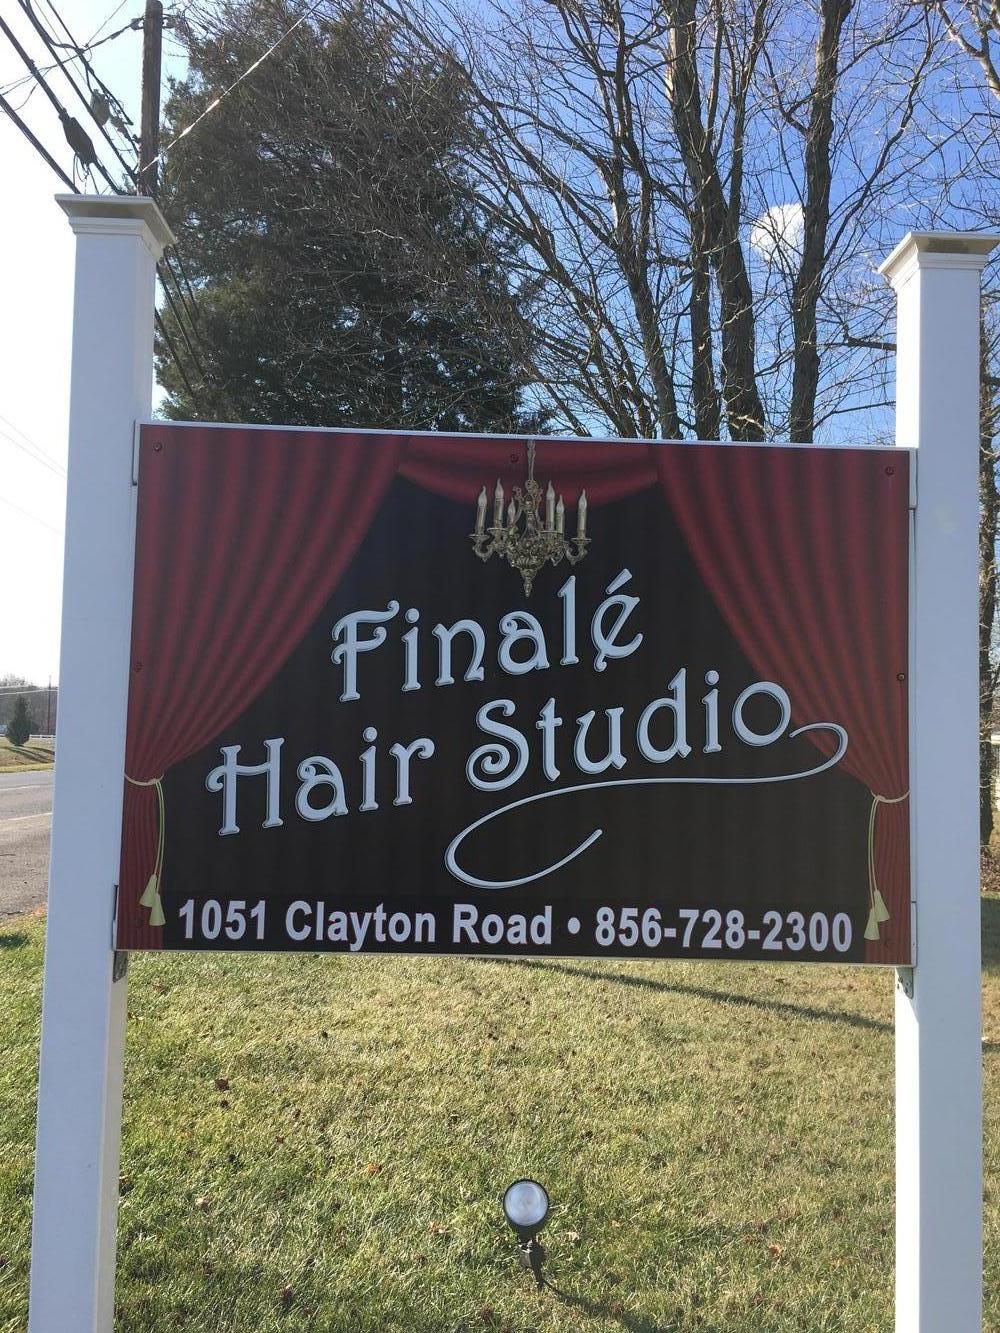 Finale Hair Studio | 1051 Clayton Rd, Williamstown, NJ 08094 | Phone: (856) 728-2300